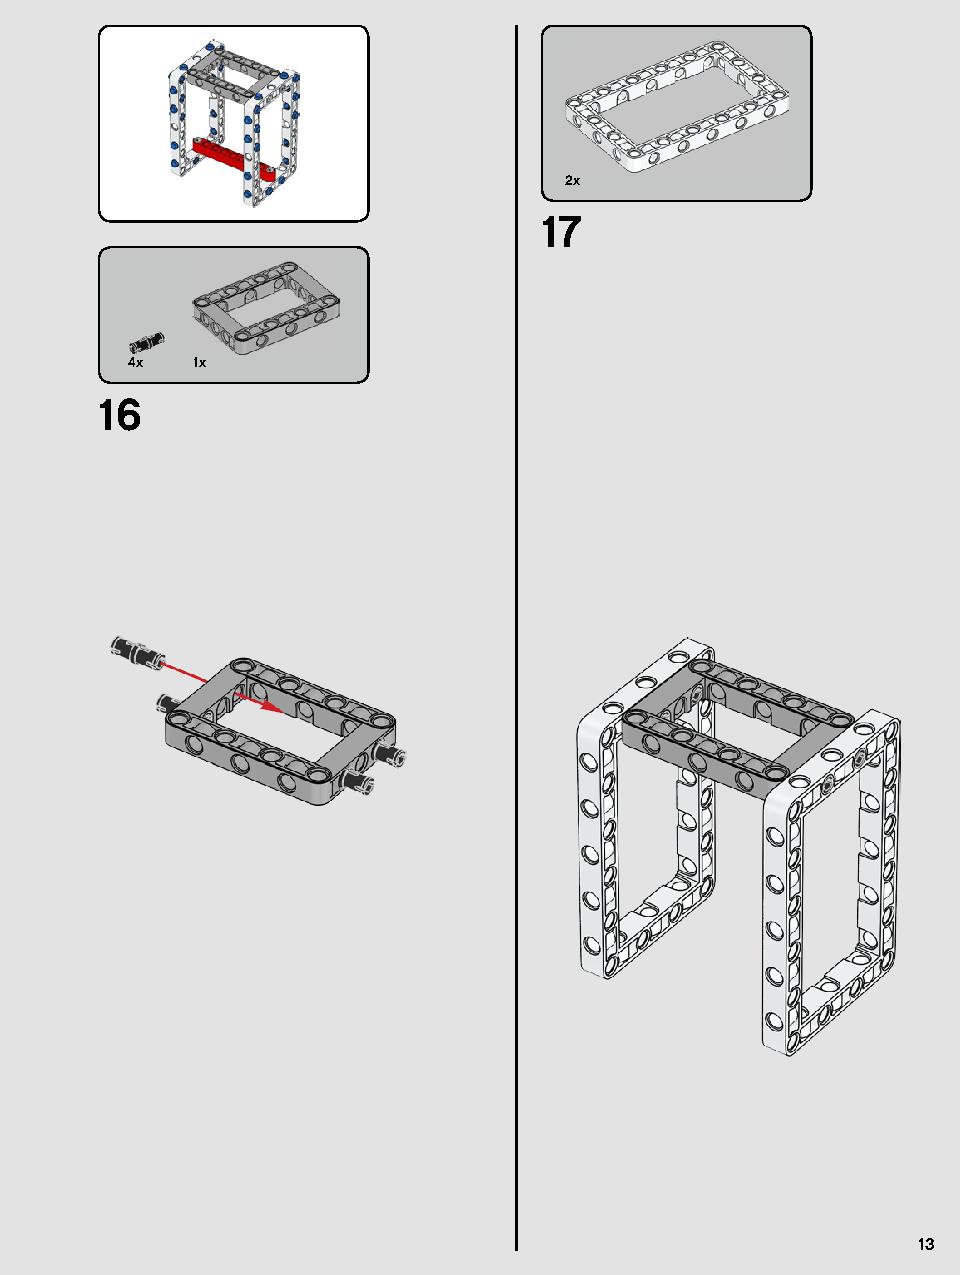 ヨーダ™ 75255 レゴの商品情報 レゴの説明書・組立方法 13 page